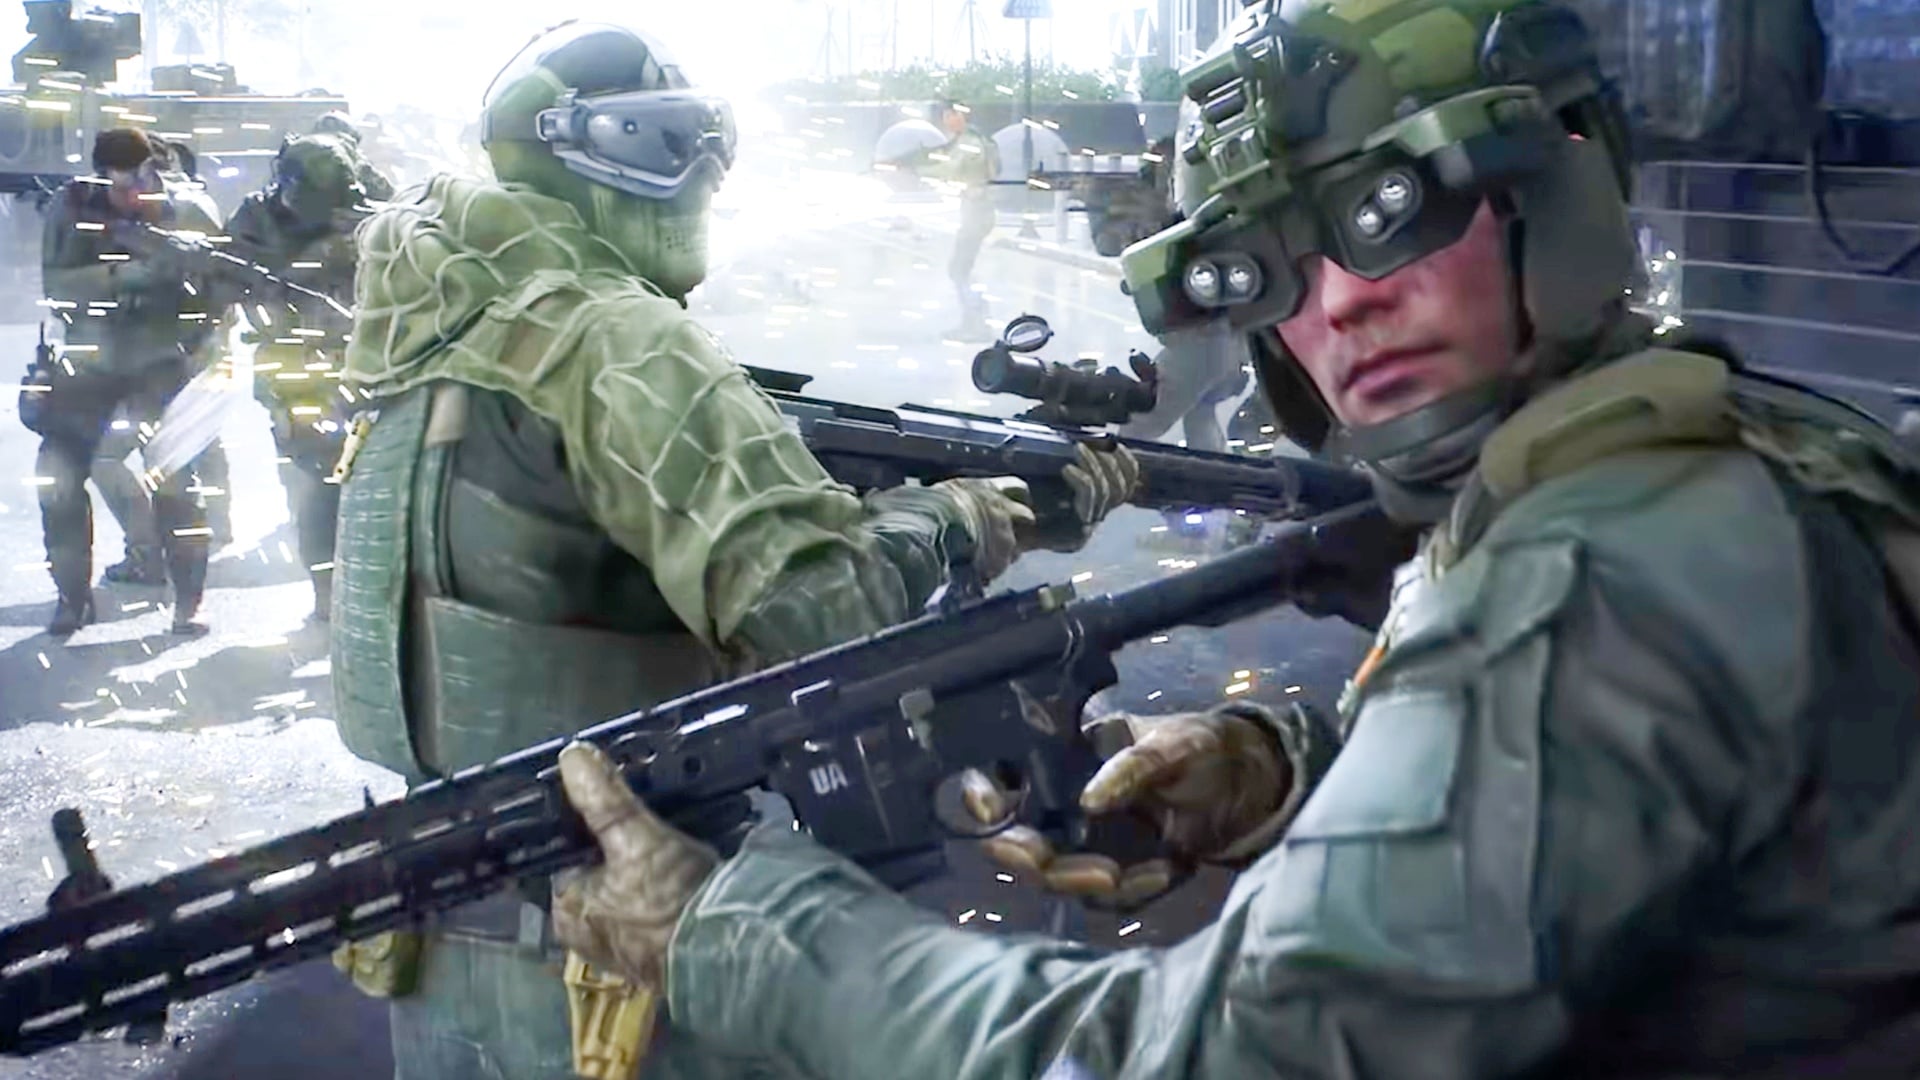 Le soldat à gauche sur la photo tient le DSR-1. Le fusil a un porte-magasin devant la gâchette pour un rechargement rapide.